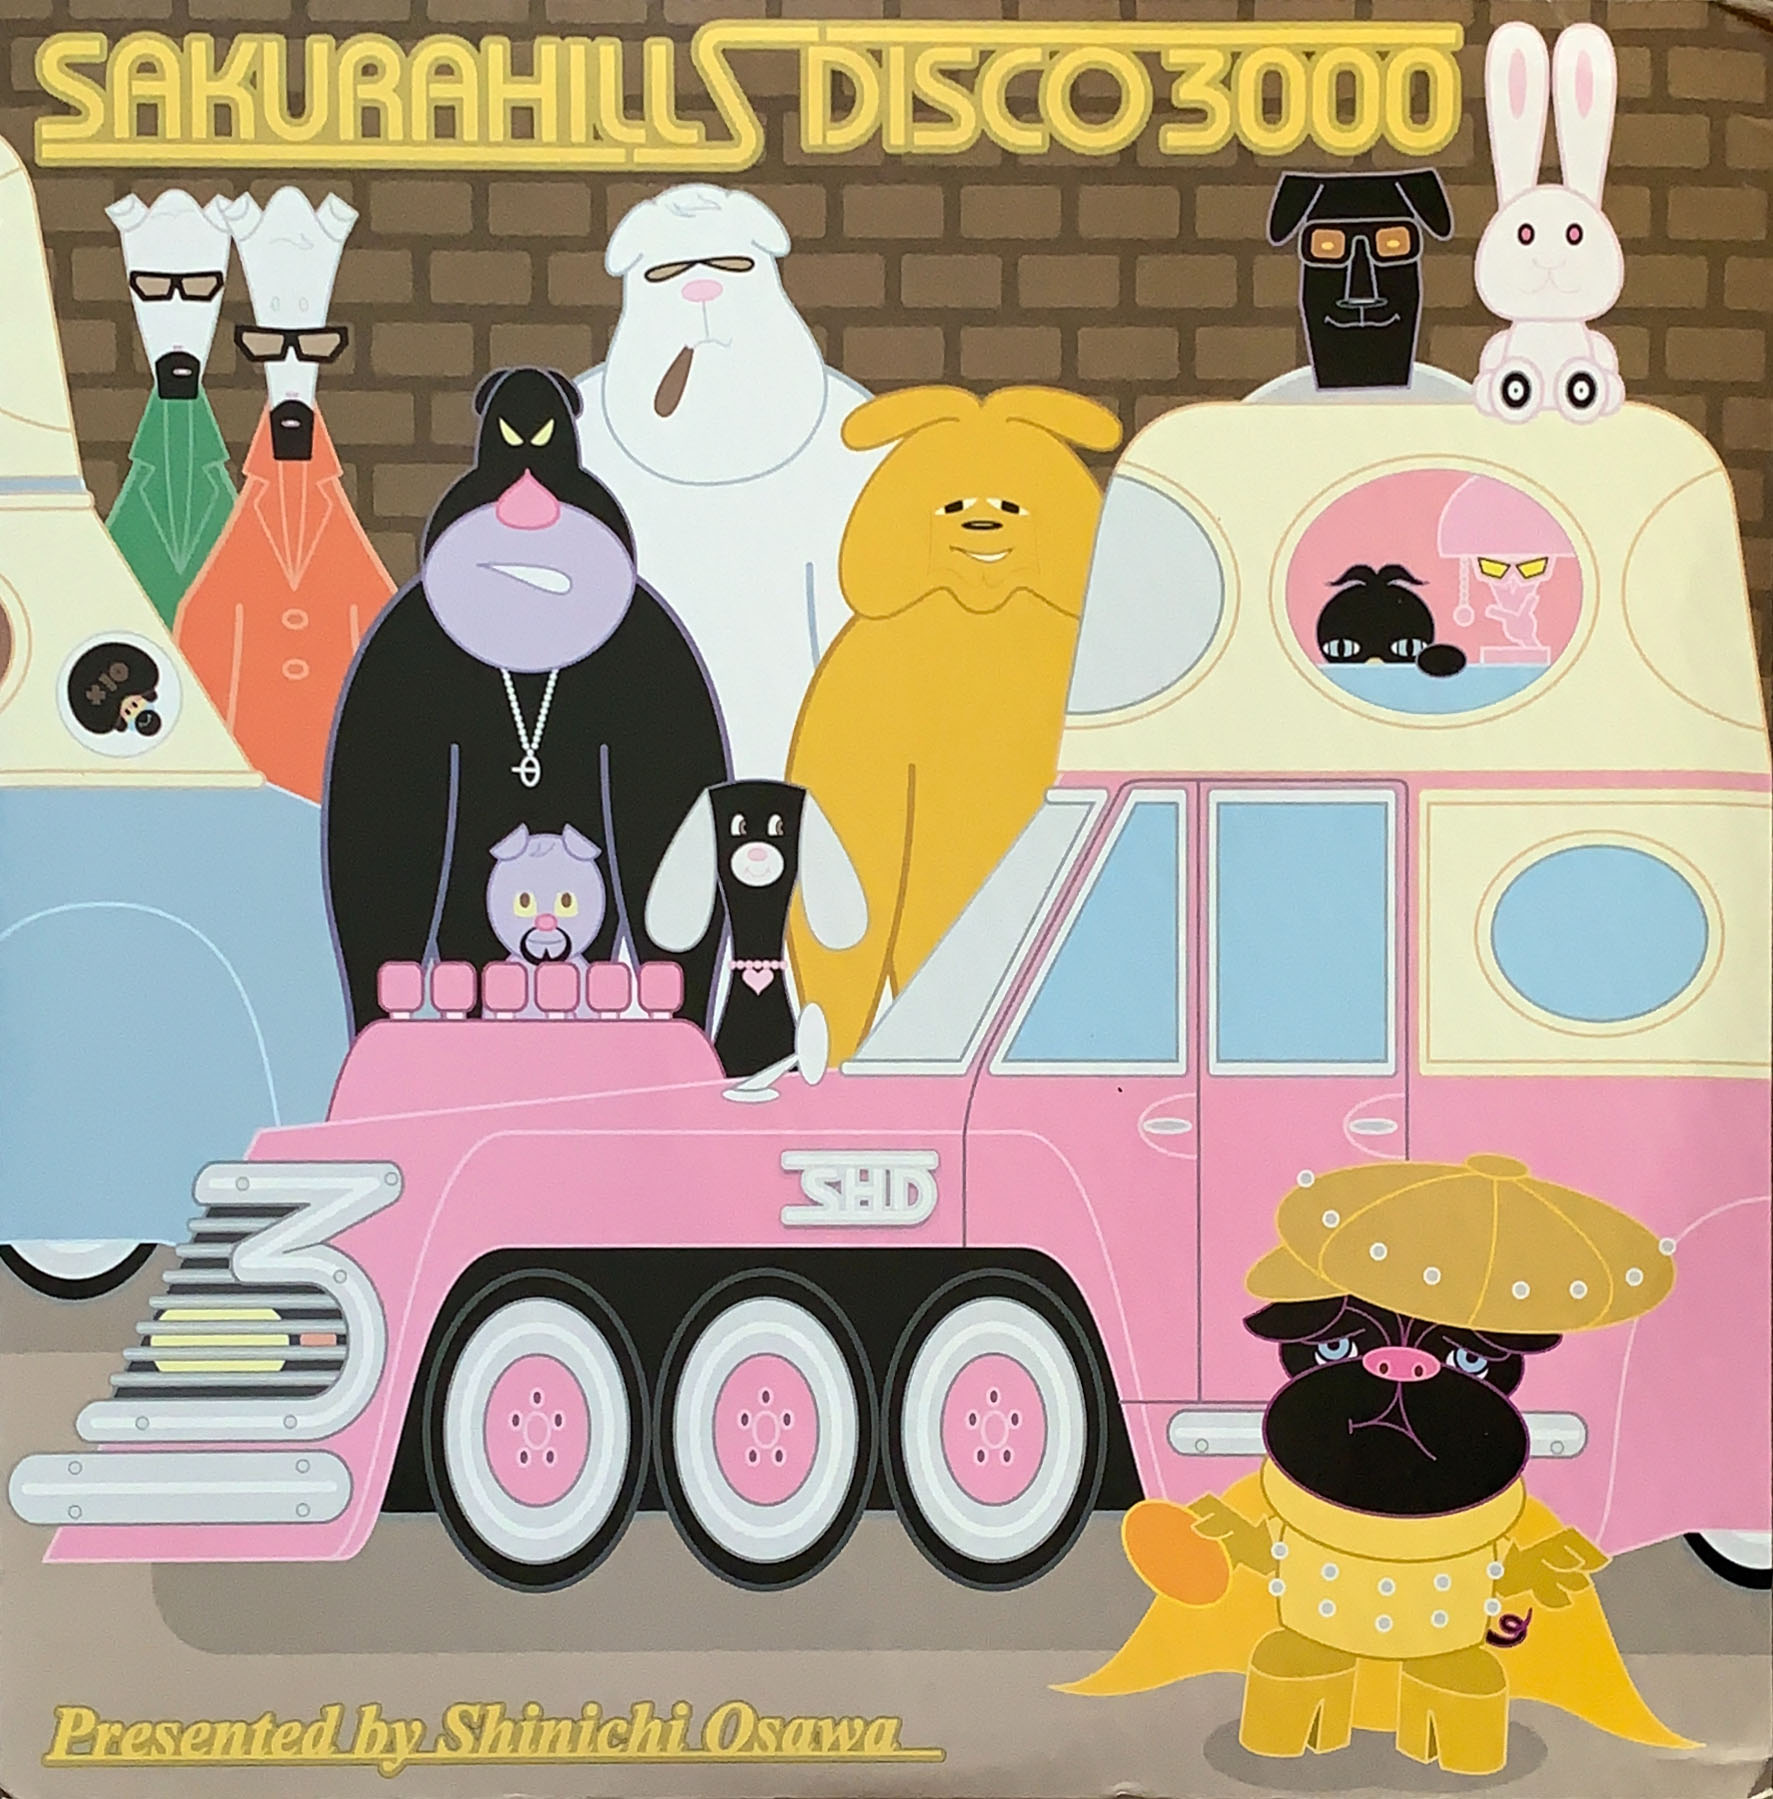 【美品】大沢伸一 アルバム ３枚組 sakurahill disco 3000